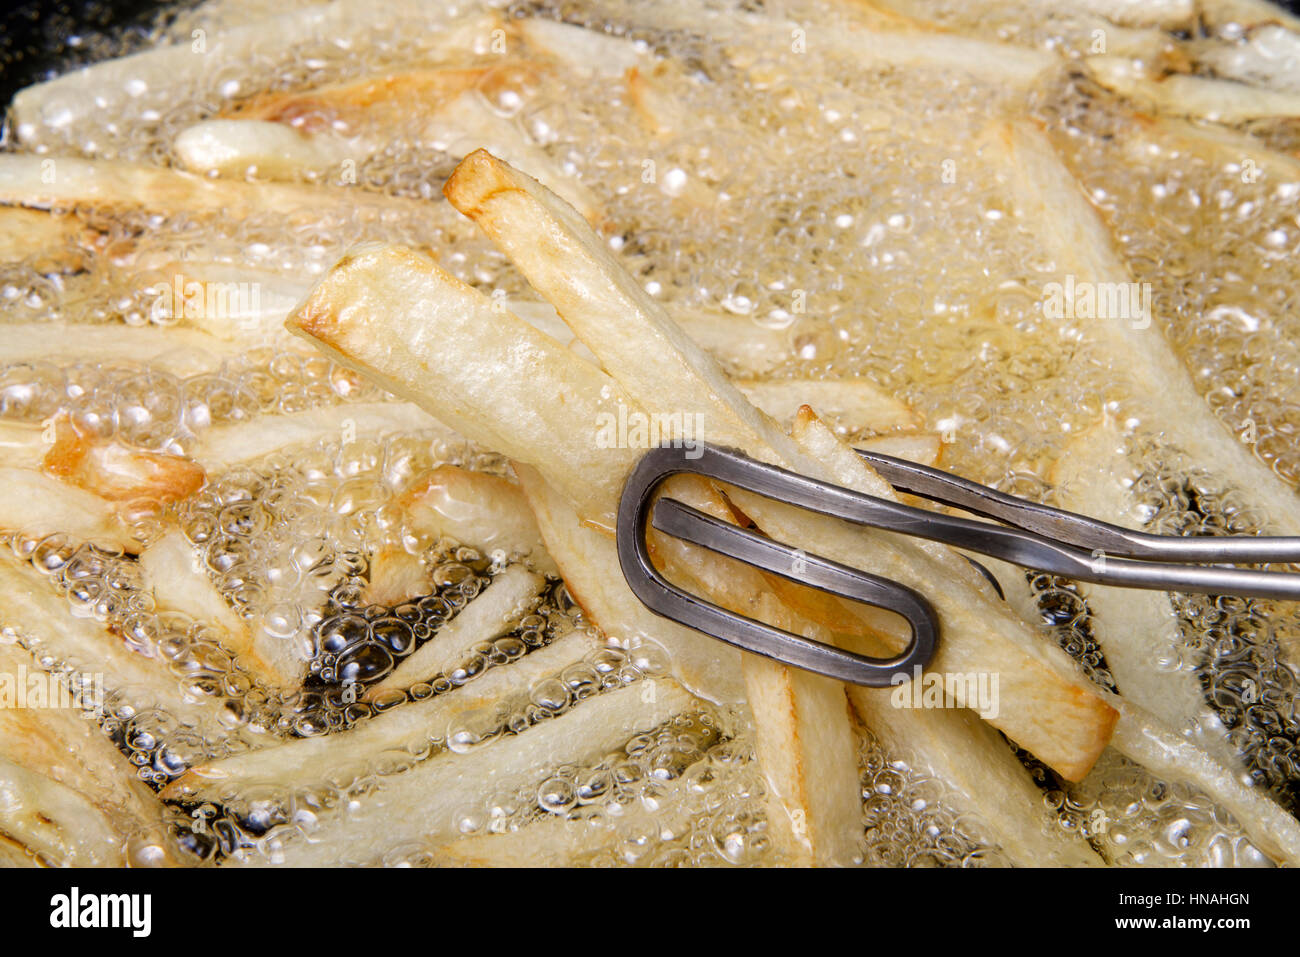 Moyennes pommes de terre Russet pelés, tranchés et la poêle dans l'huile chaude de la création home made French Fries, en remuant en cours de cuisson avec des pinces. Un peu coûteux Banque D'Images